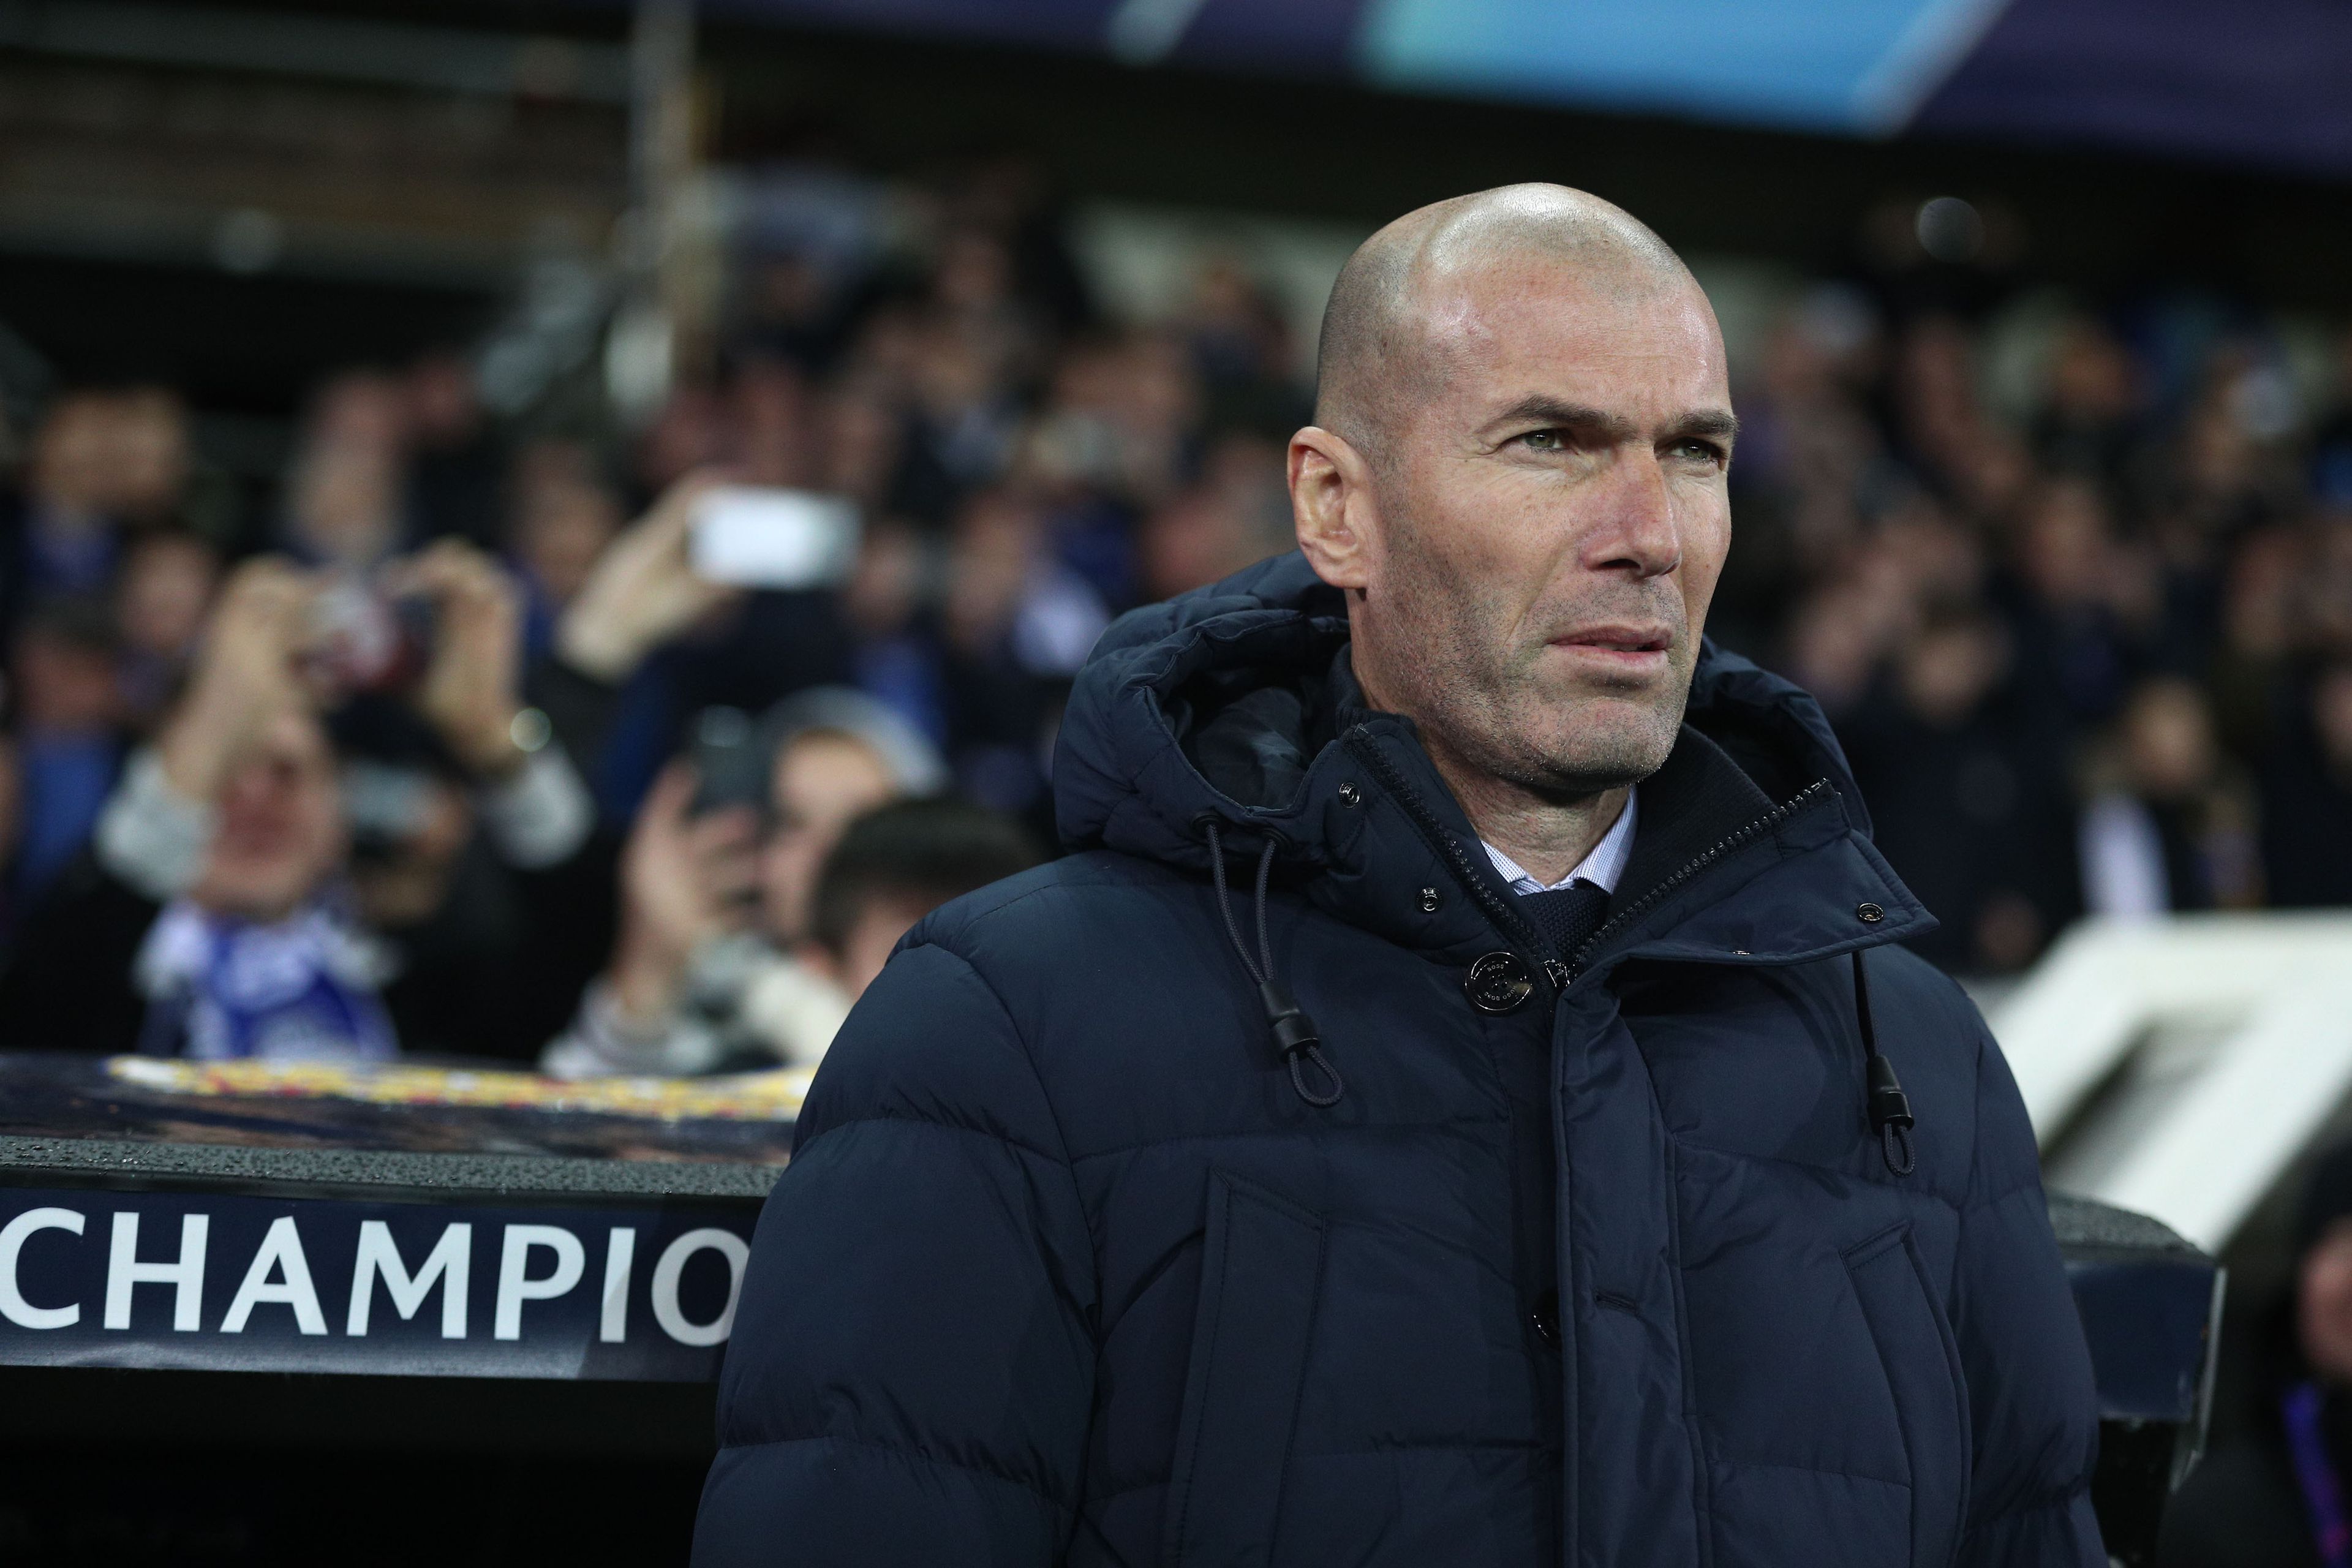 Zinédine Zidane a Real Madrid vezető edzője / Fotó: Northfoto